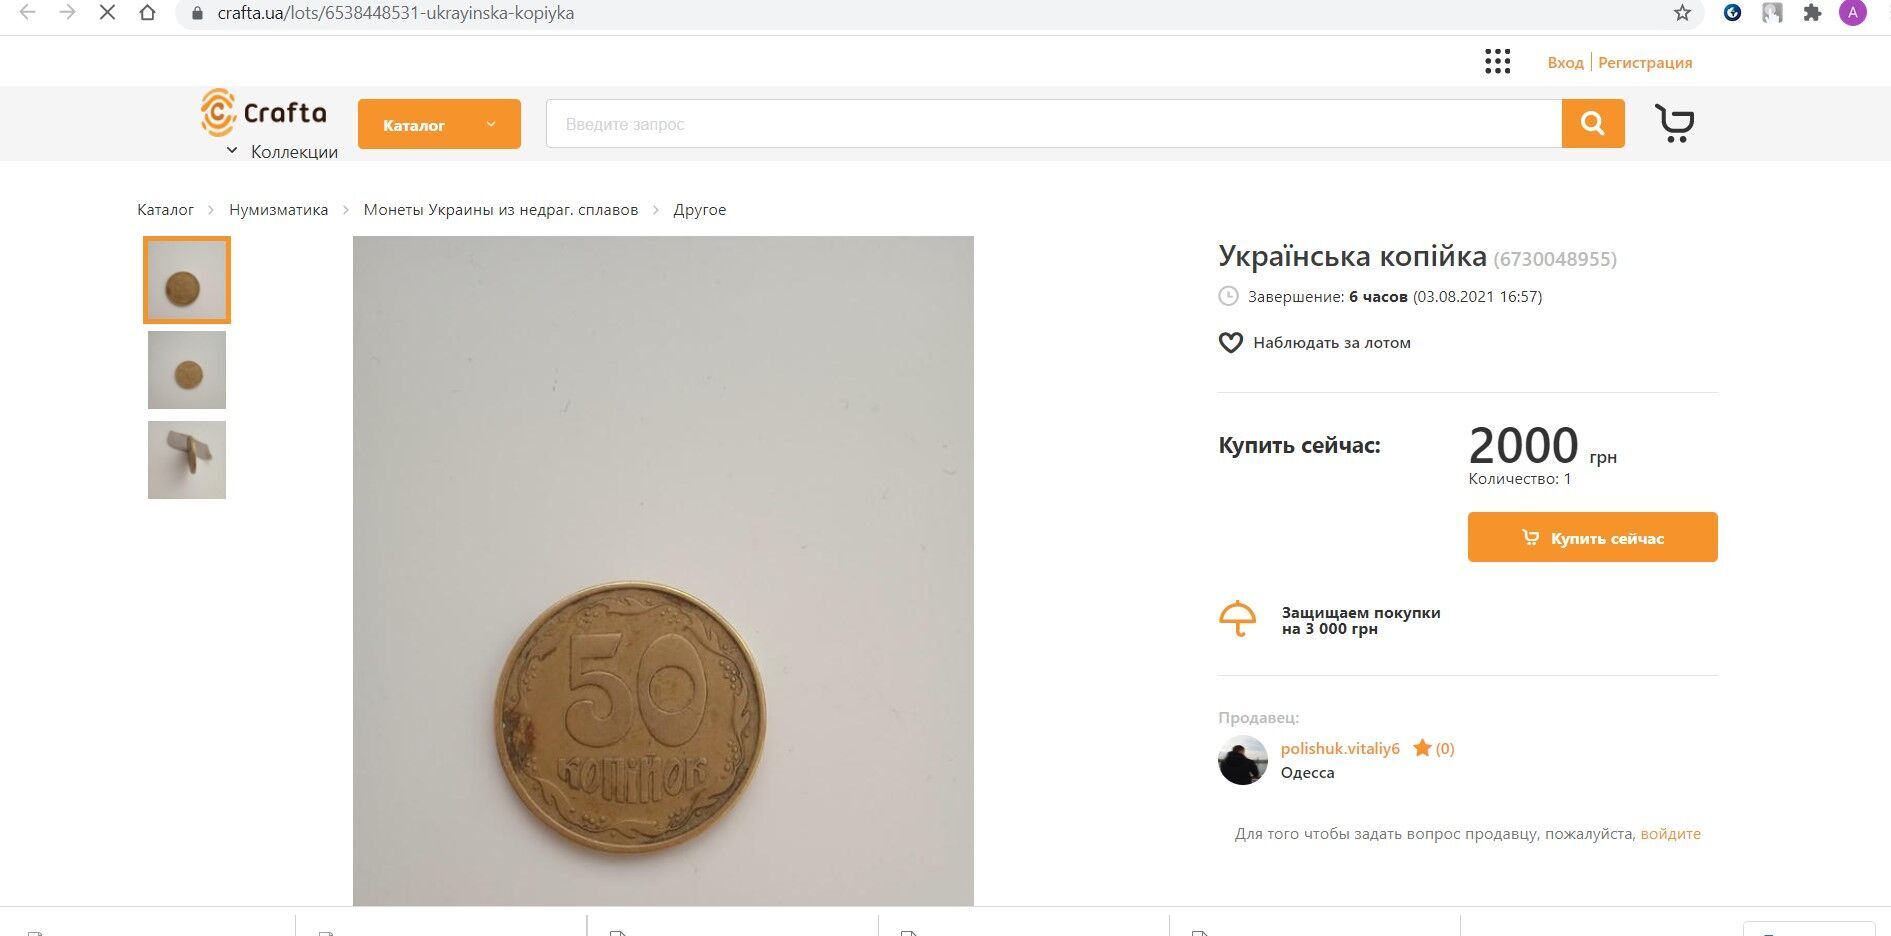 Монета в 50 копеек может стоить 2000 грн